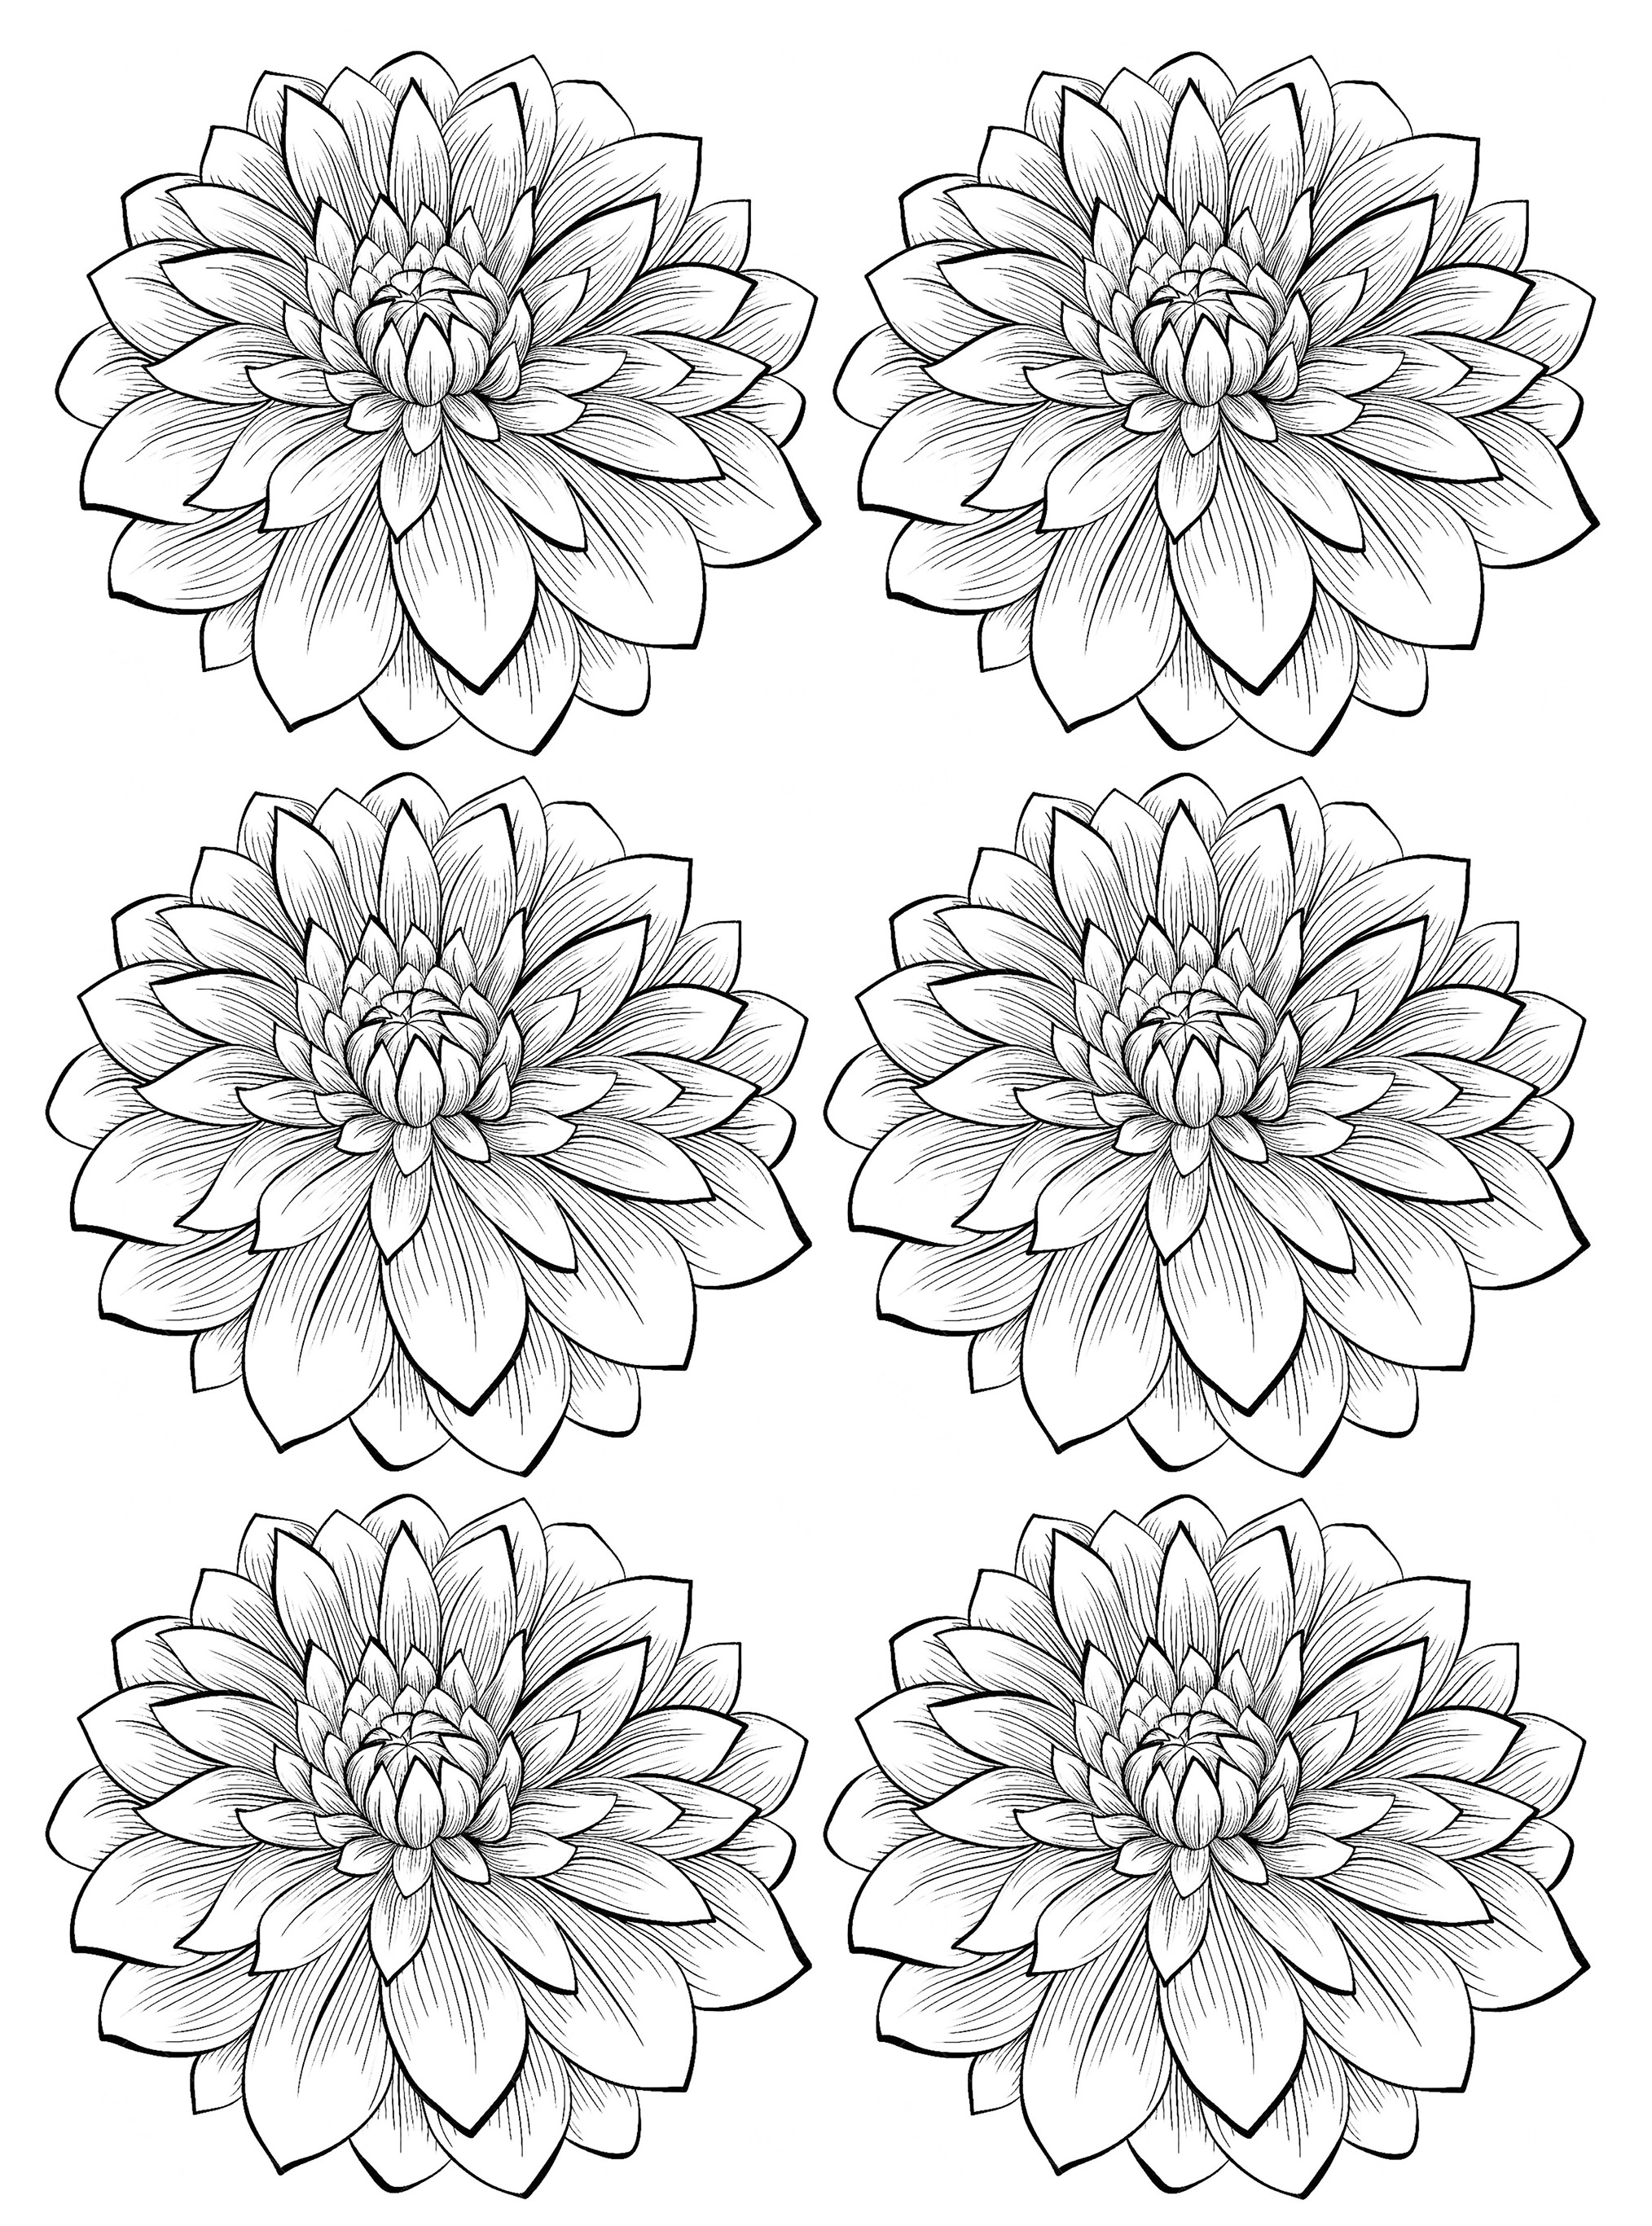 Six dahlia flower FlowersColoring Pages